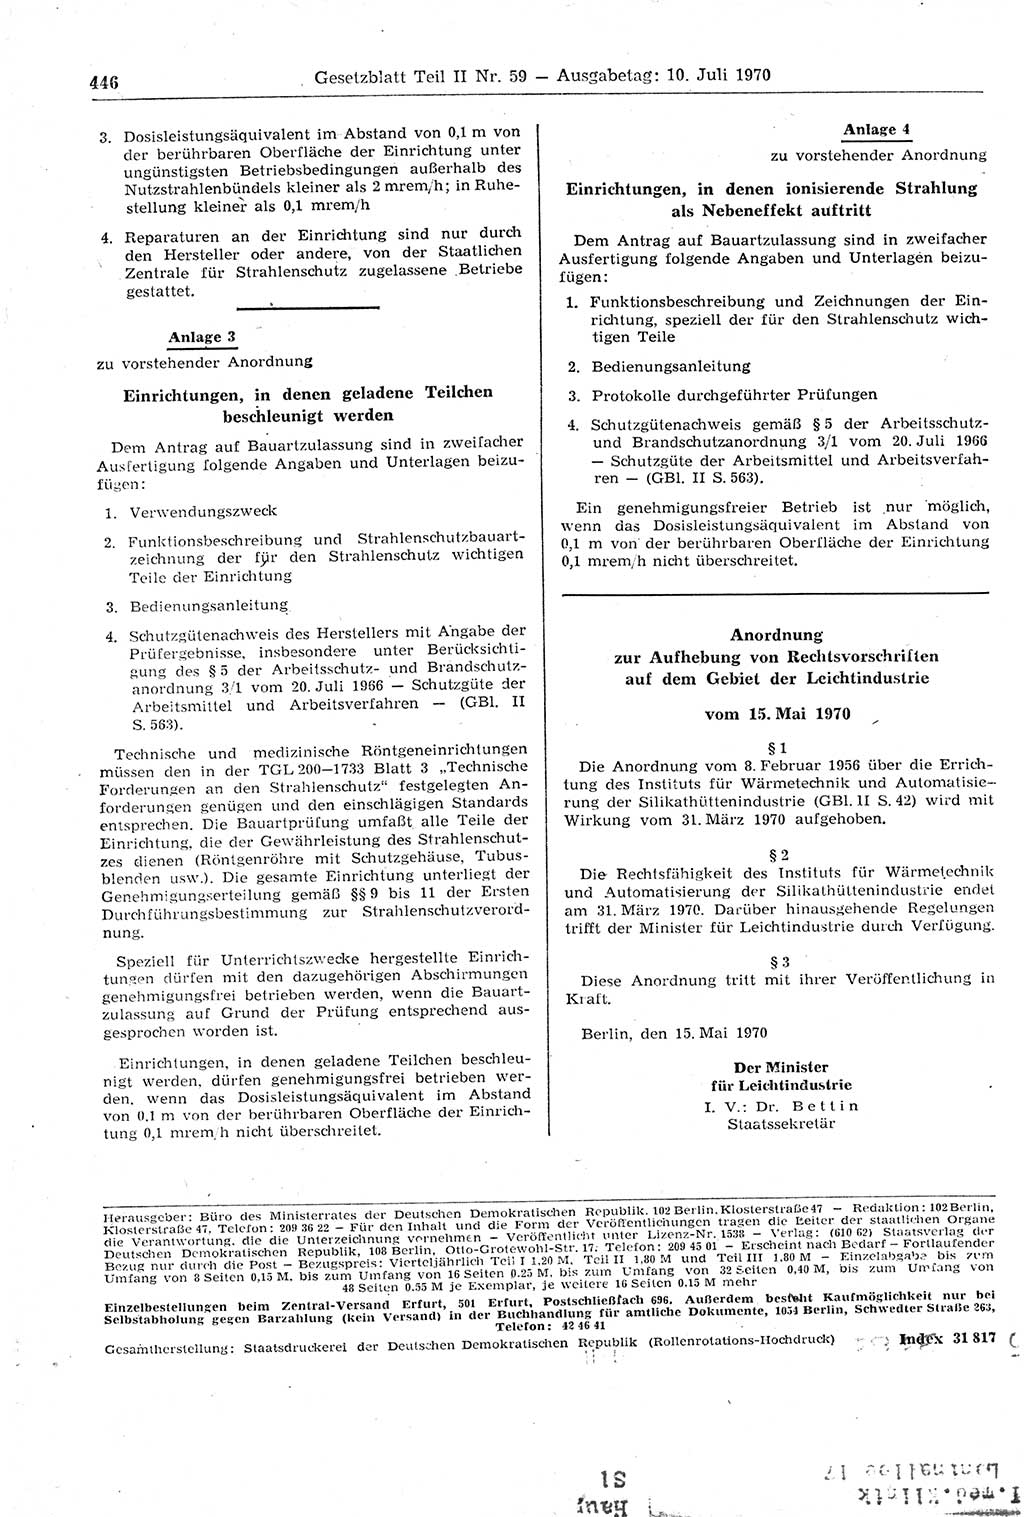 Gesetzblatt (GBl.) der Deutschen Demokratischen Republik (DDR) Teil ⅠⅠ 1970, Seite 446 (GBl. DDR ⅠⅠ 1970, S. 446)